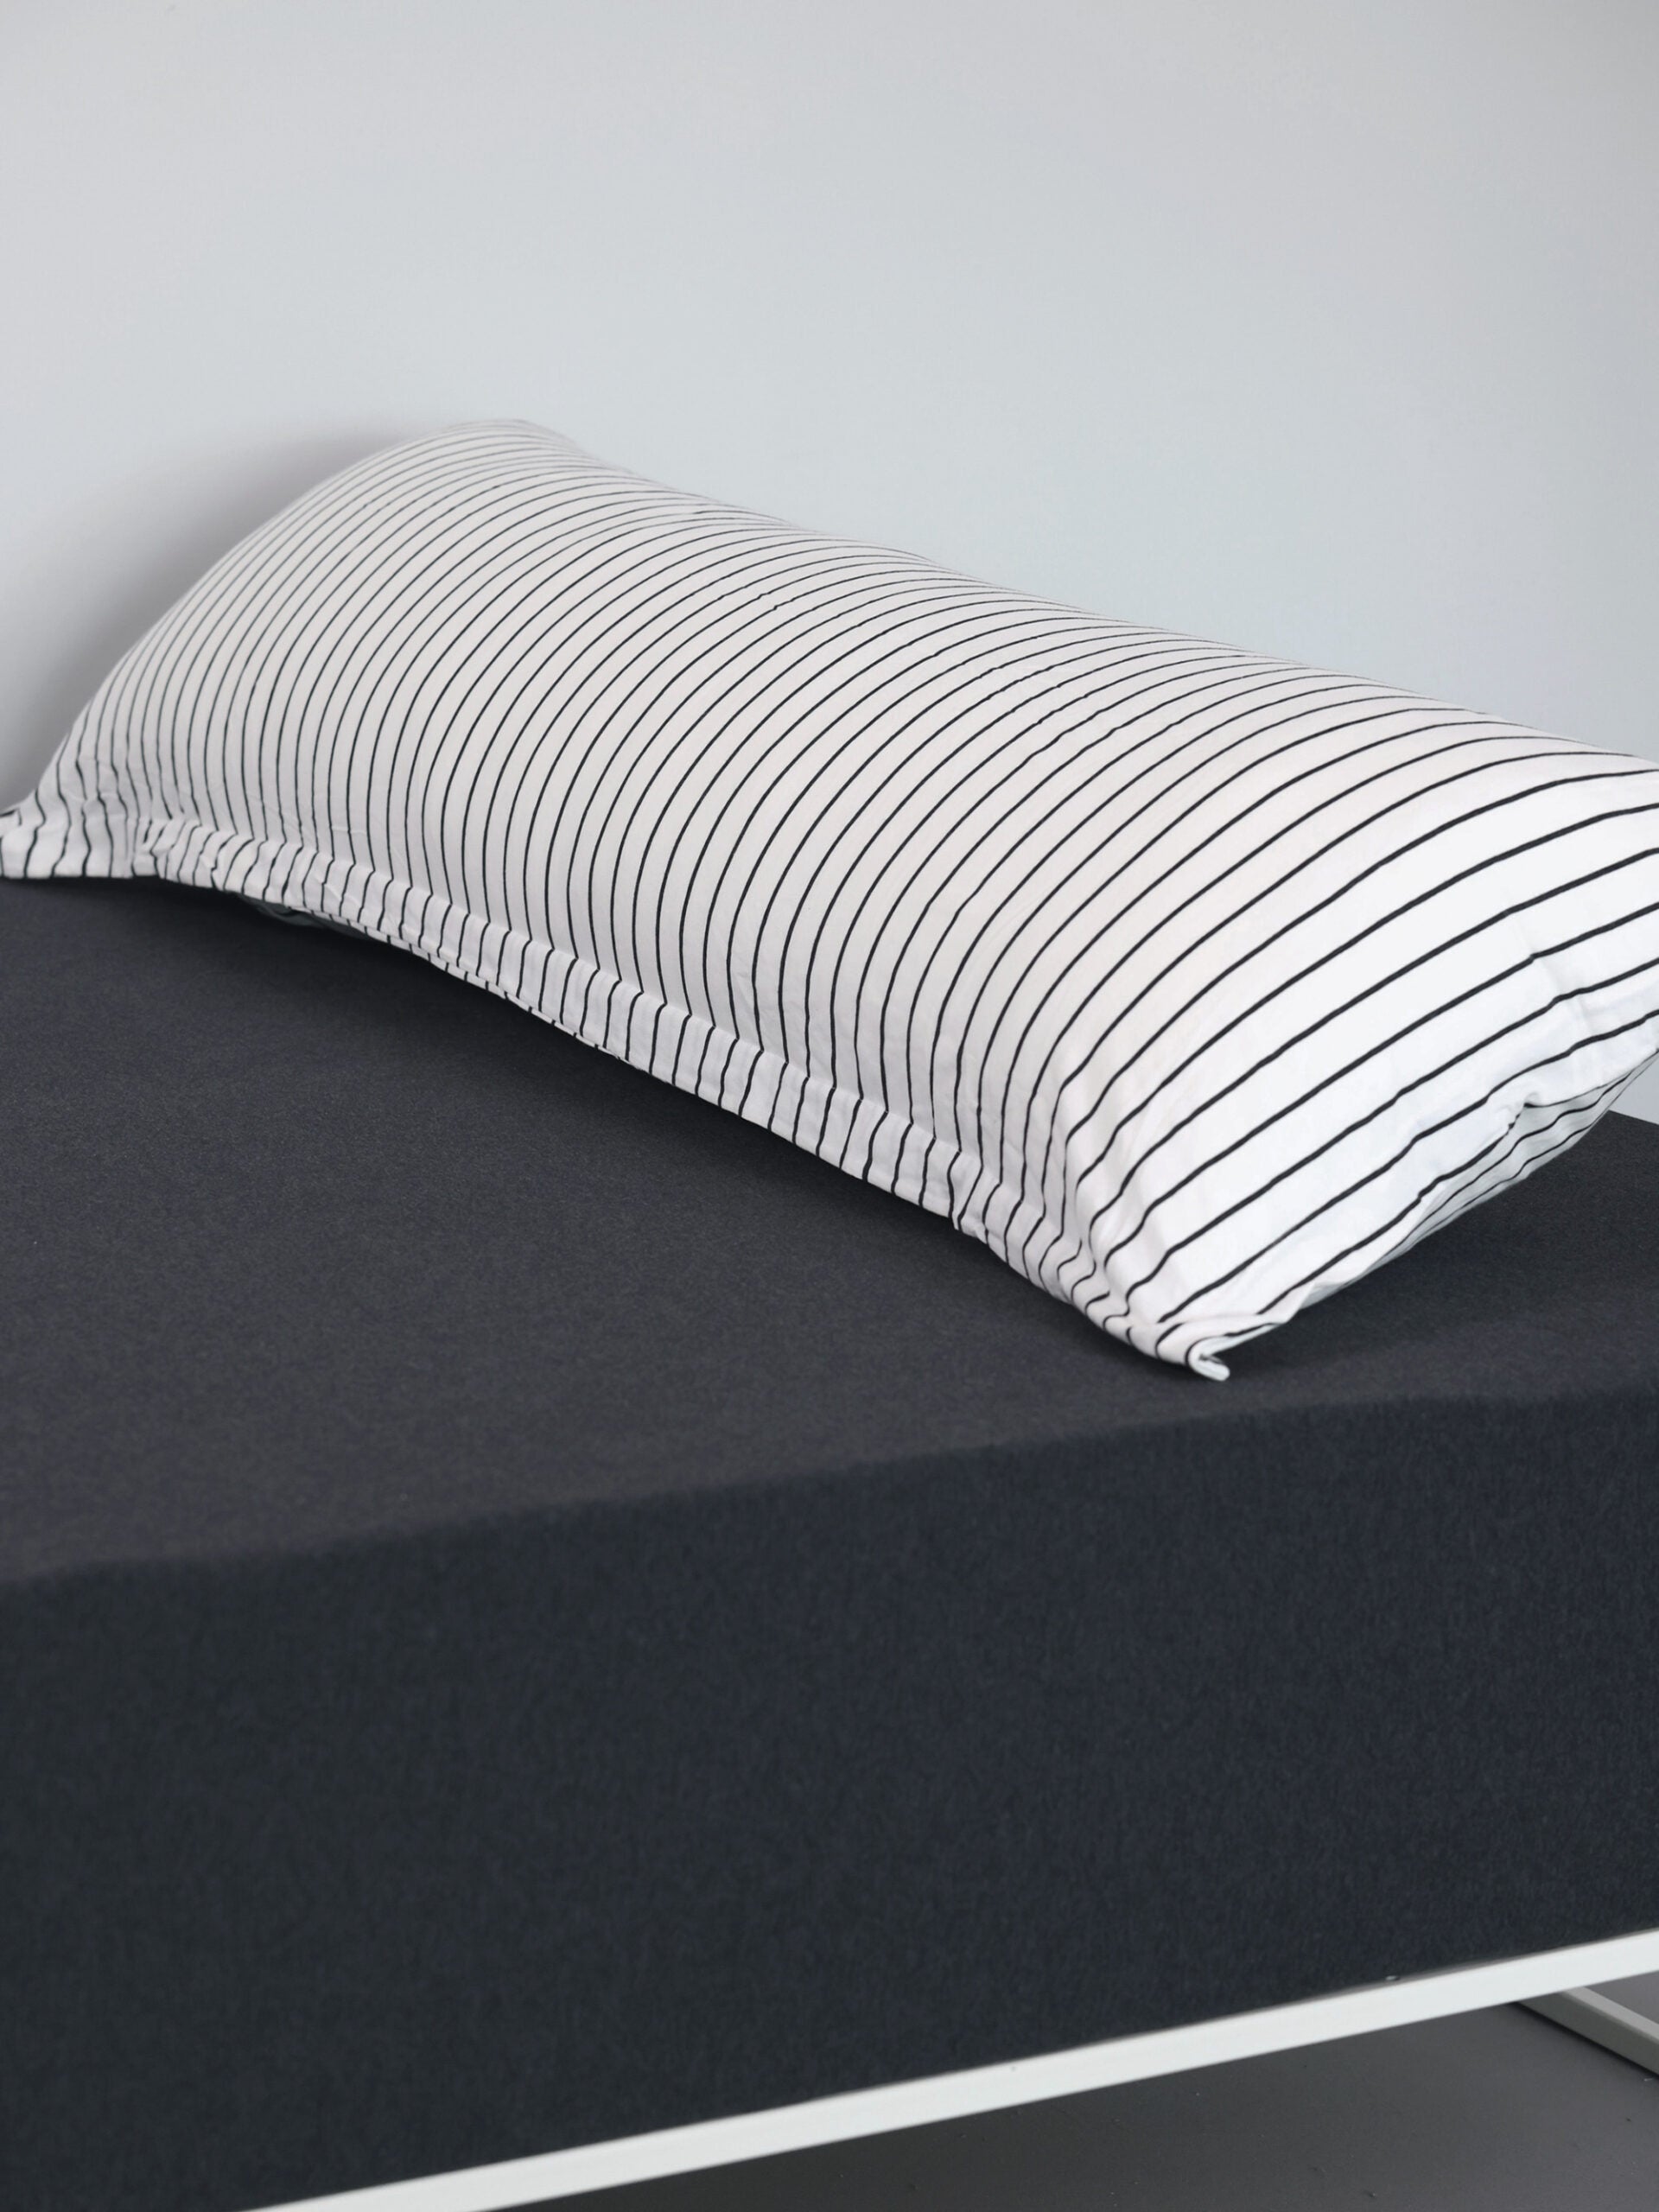 ראש מיטת ברזל לבנה עם סדין, כרית ארוכה וציפית לכרית Stripes בחדר אפור